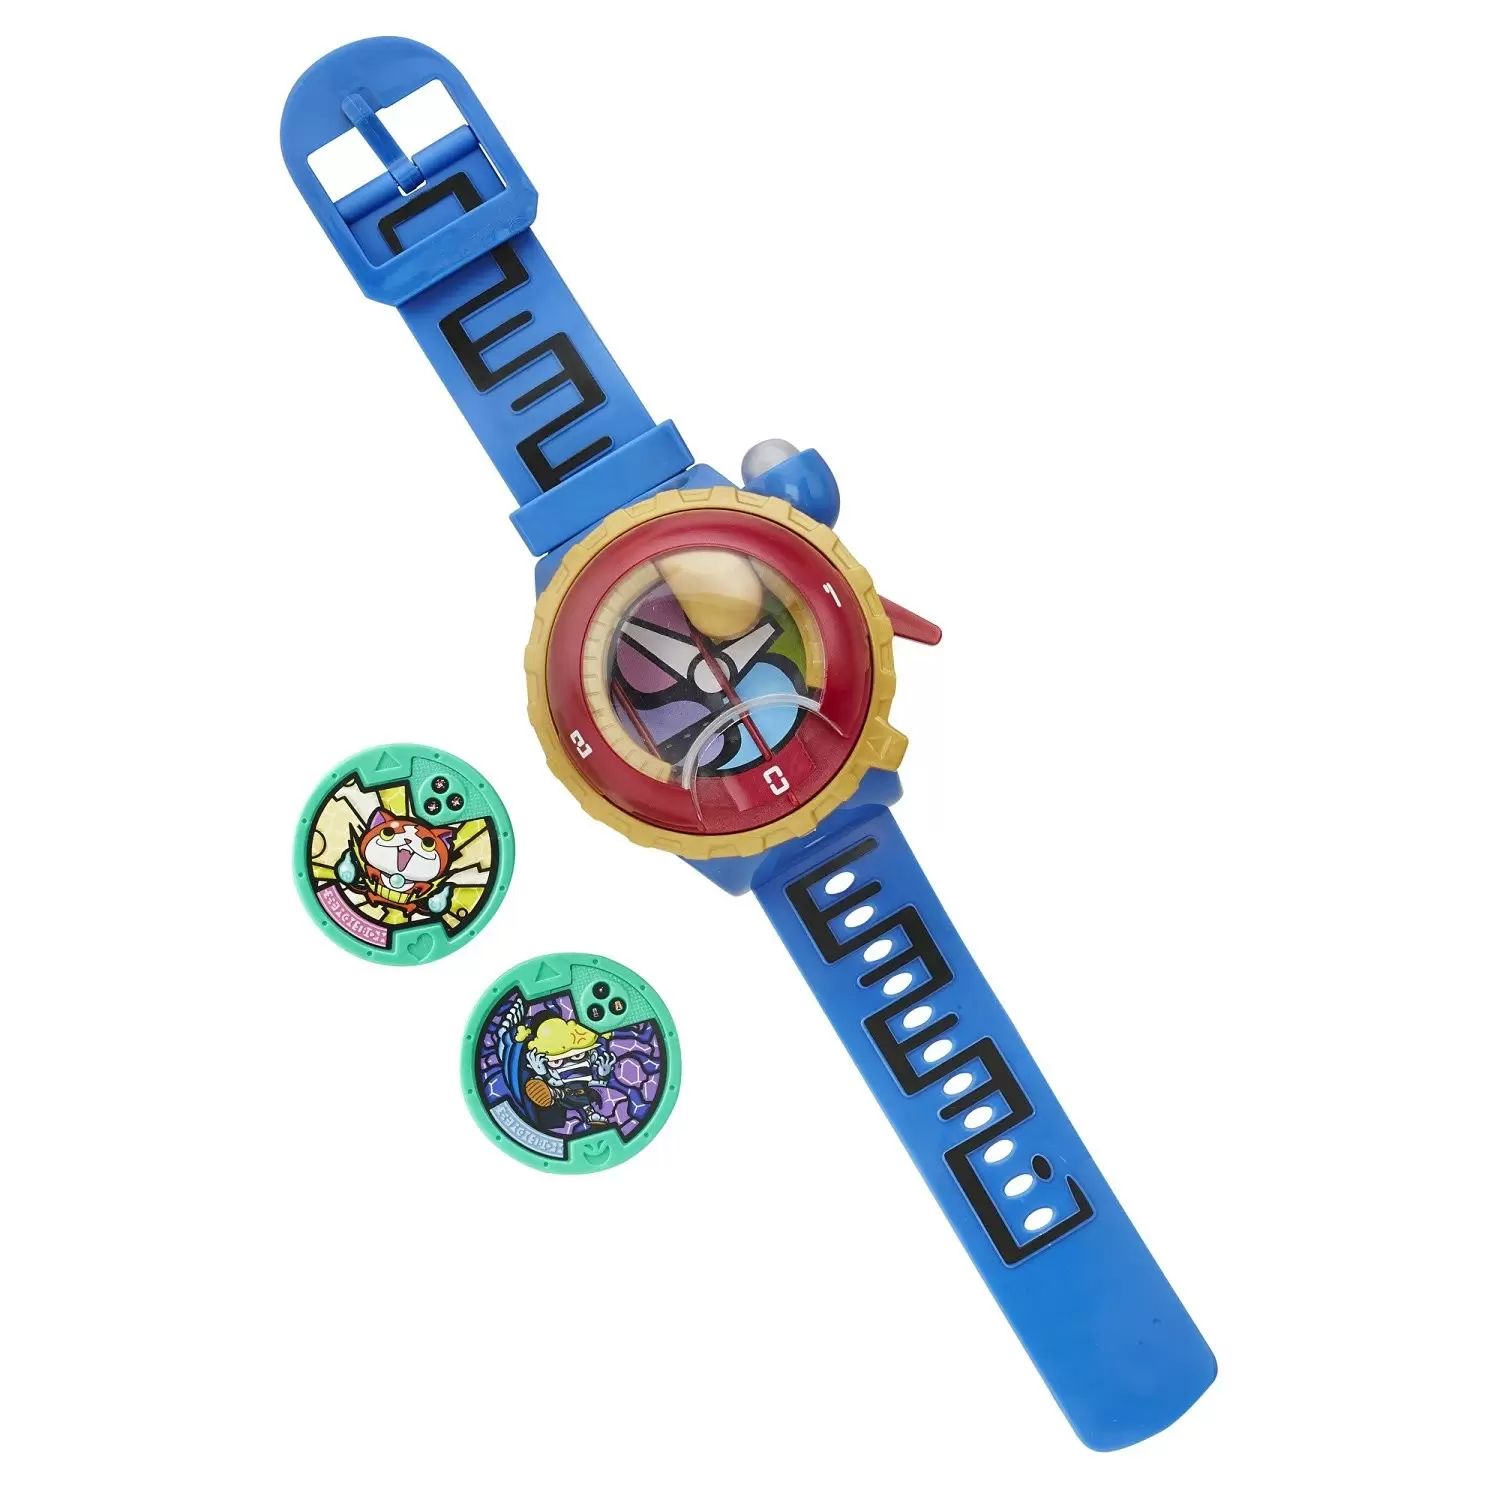 Yo-kai Watches - Yo-kai motion watch